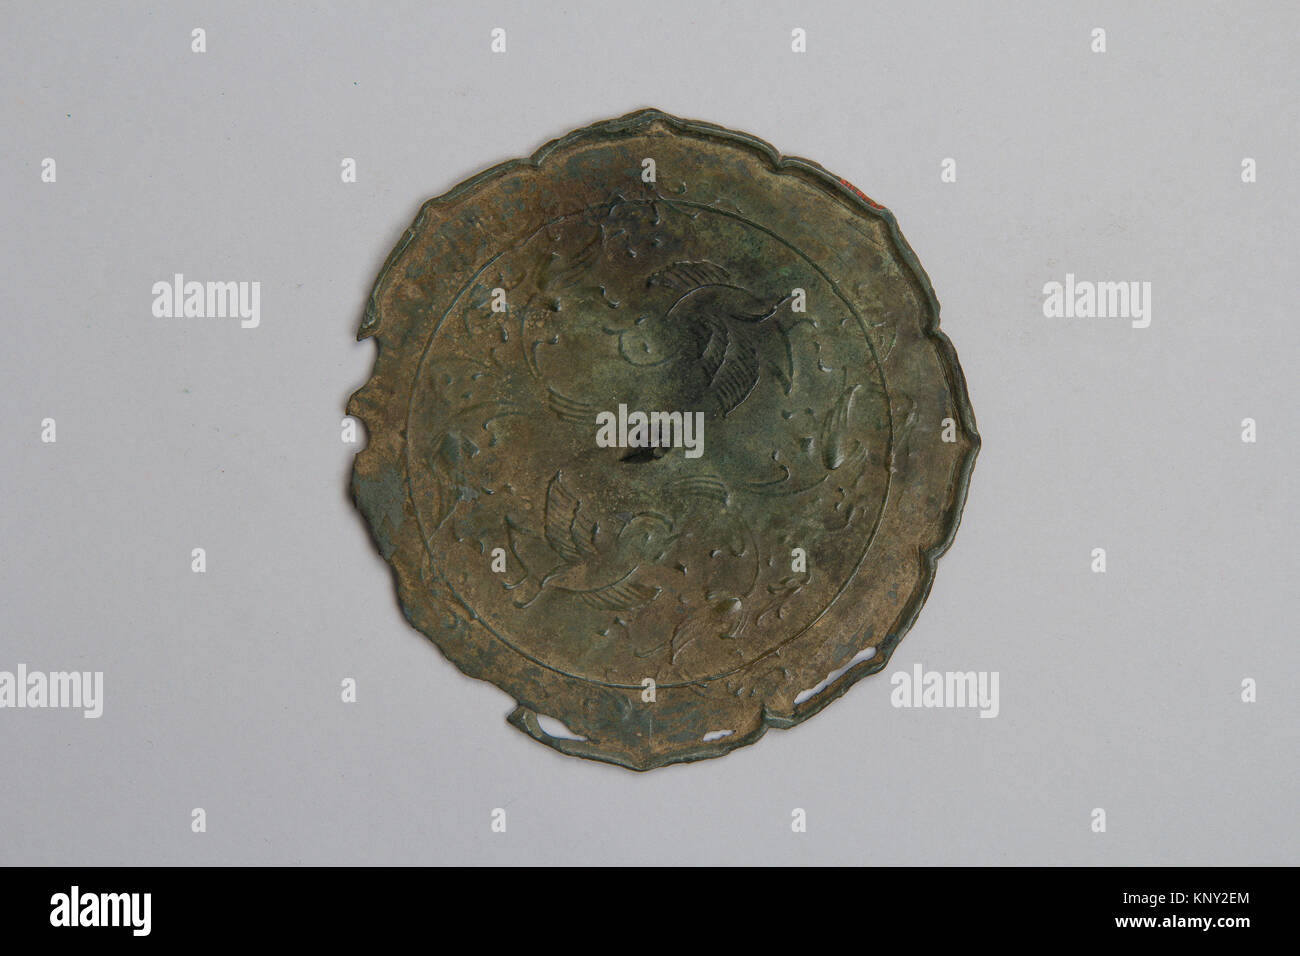 Simetría. Período: Período Heian (794-1185); Cultura: Japón; Medio: Bronce; Dimensiones: Diámetro. 5 pulg. (12,7 cm); Clasificación: Espejos Foto de stock